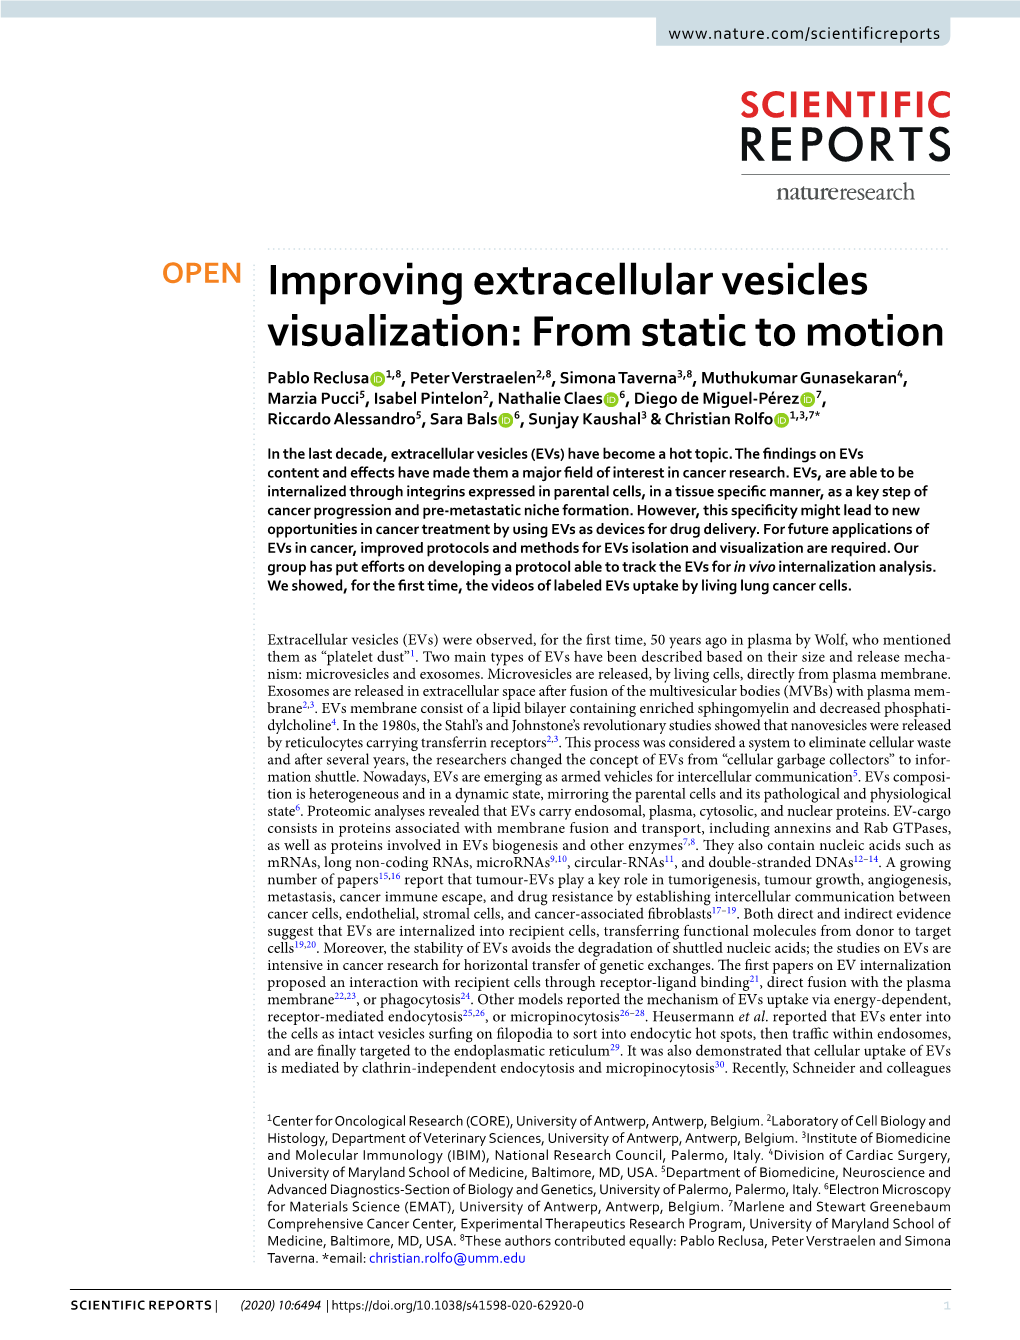 Improving Extracellular Vesicles Visualization